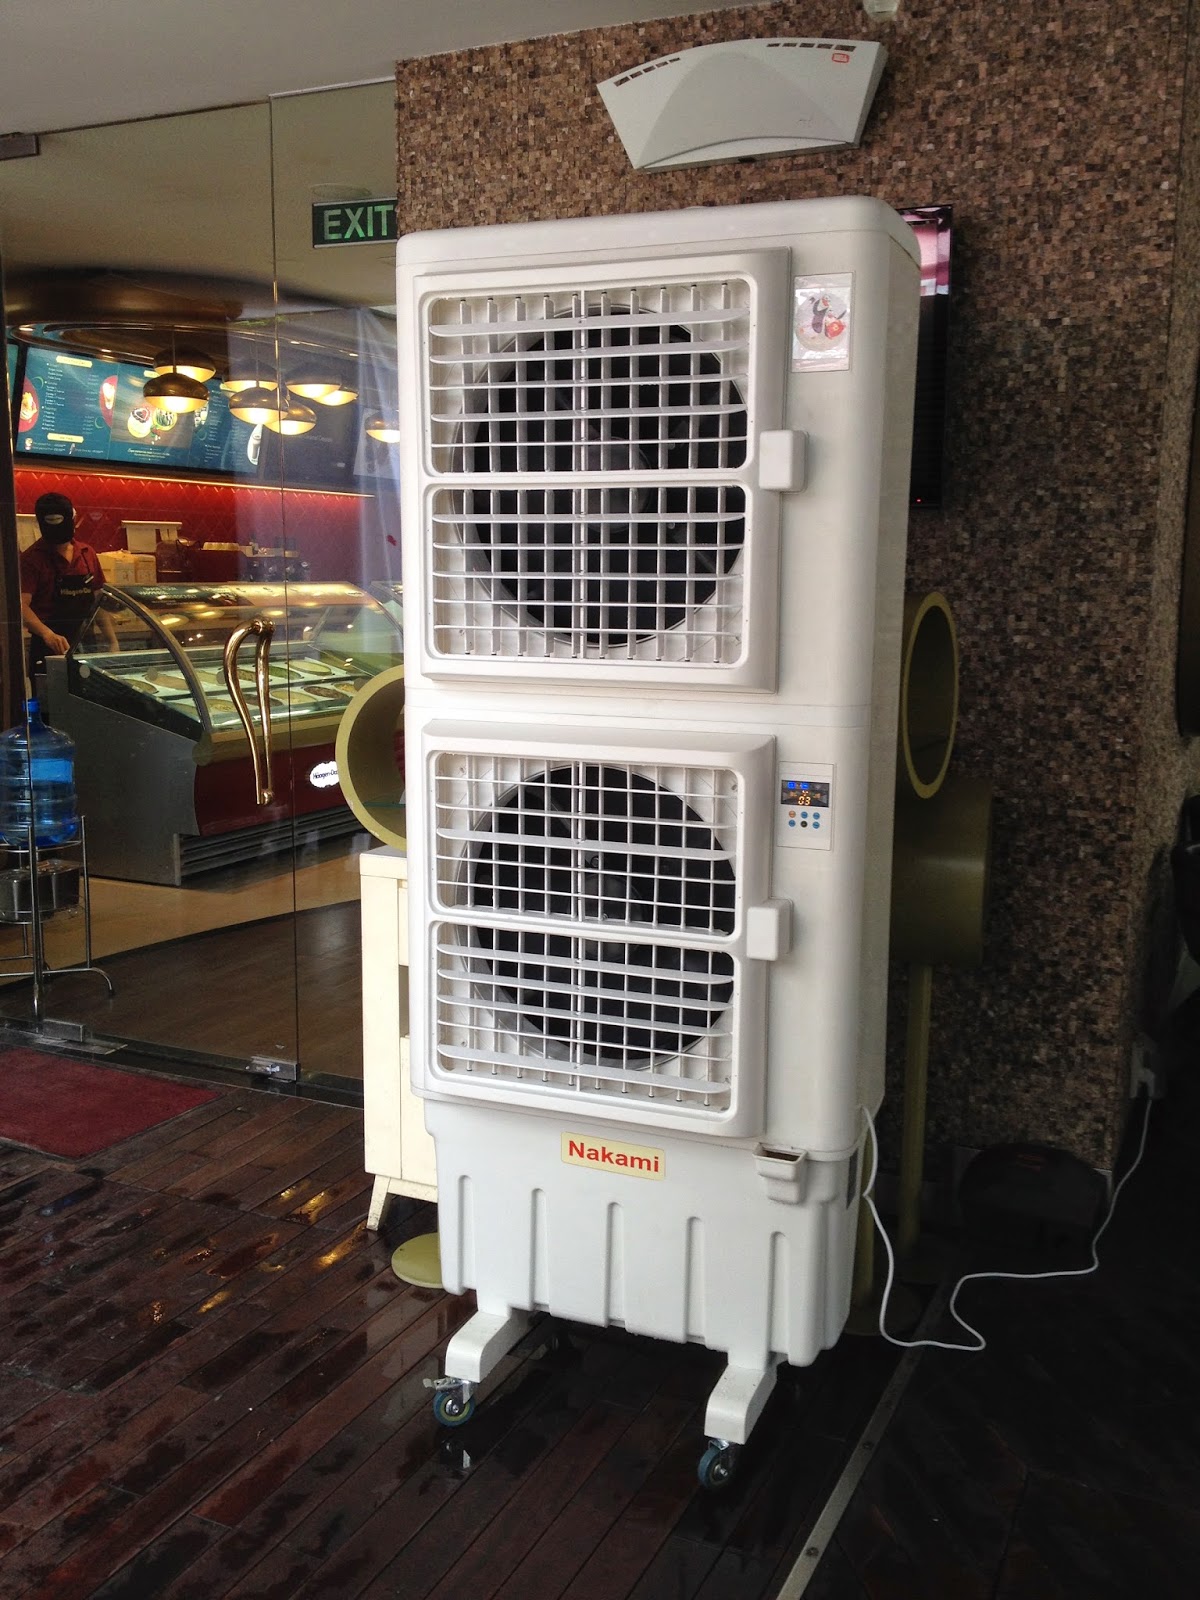 Máy làm mát không khí Nakami được đặt trong siêu thị